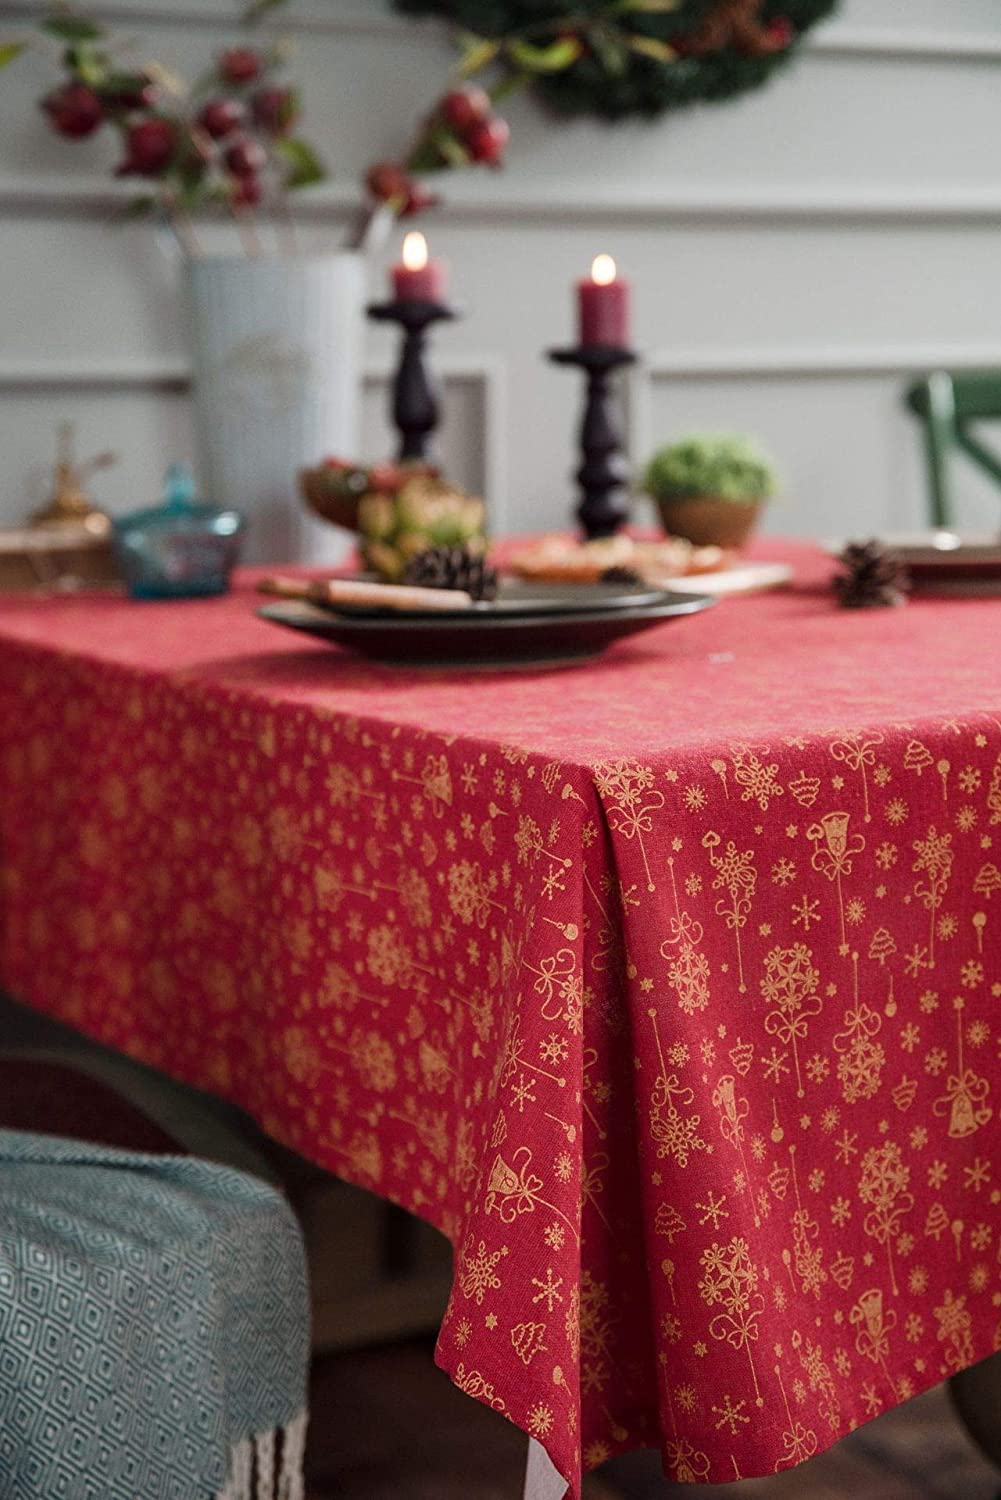 Hô biến phòng ăn gia đình ngập tràn không khí Giáng sinh thật dễ dàng chỉ bằng chiếc khăn trải bàn - Ảnh 11.